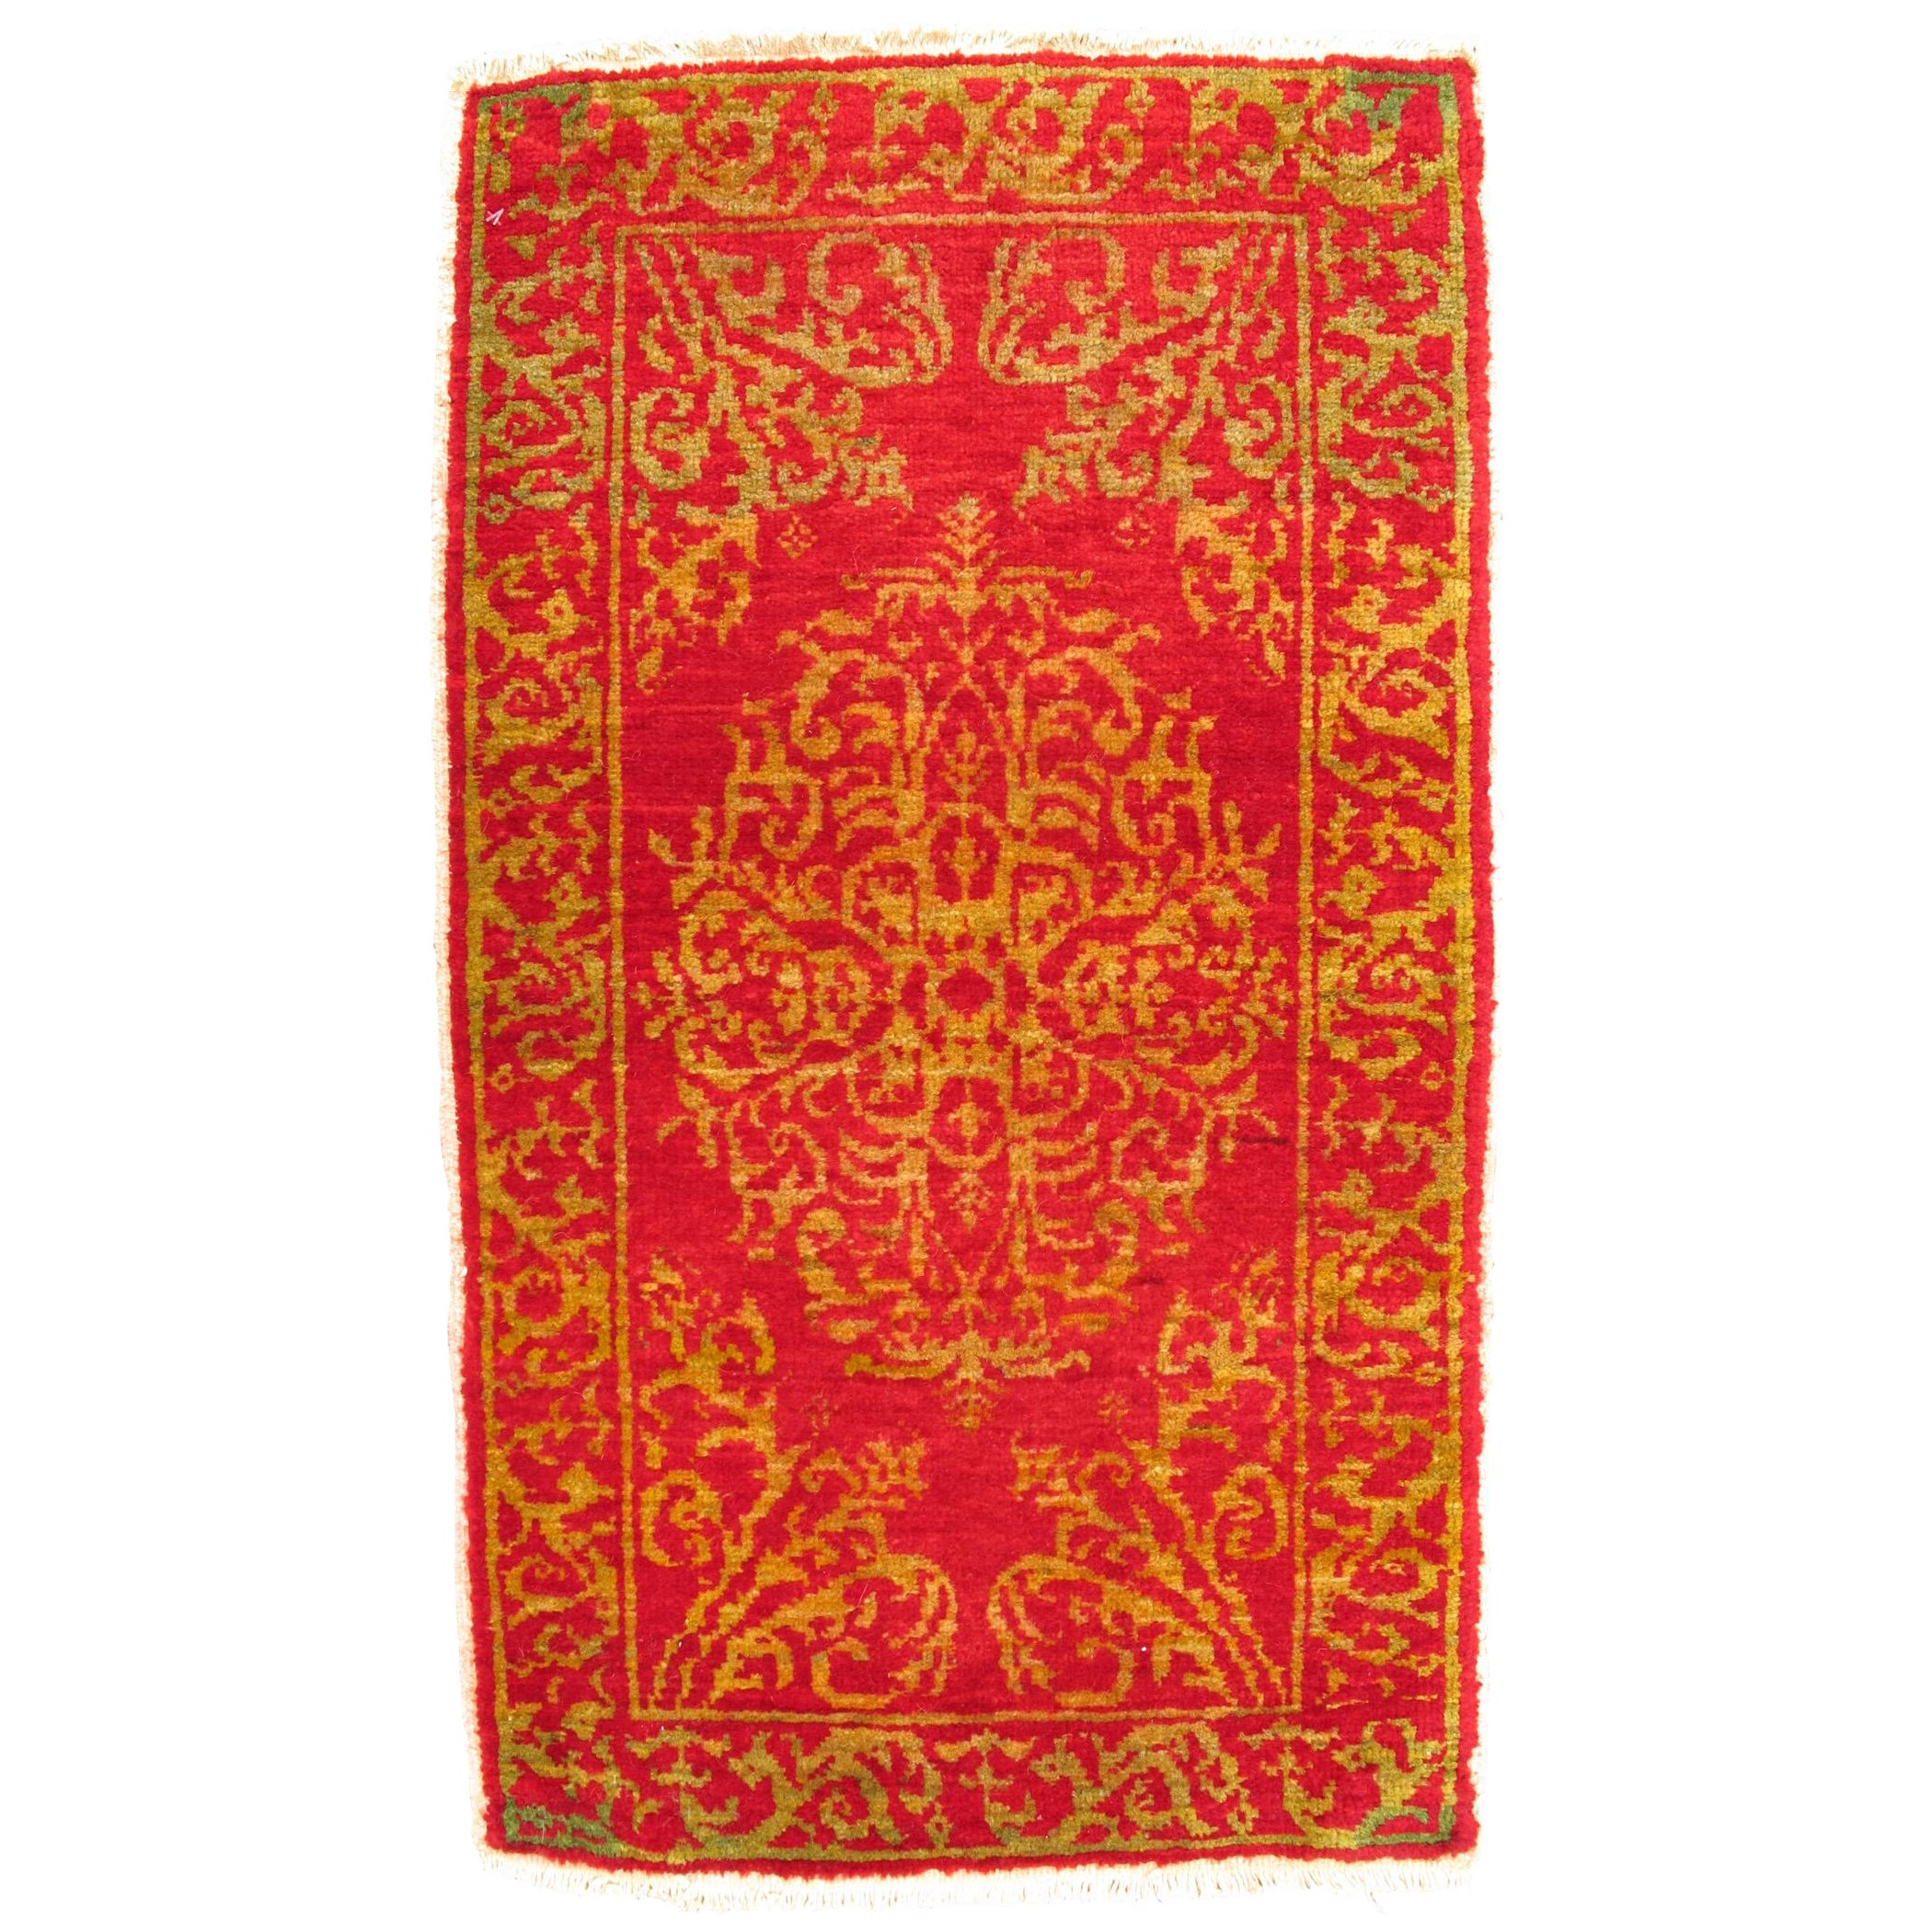  Antiker türkischer Ottomane-Teppich mit geblümtem Medaillon in Rot und Gold